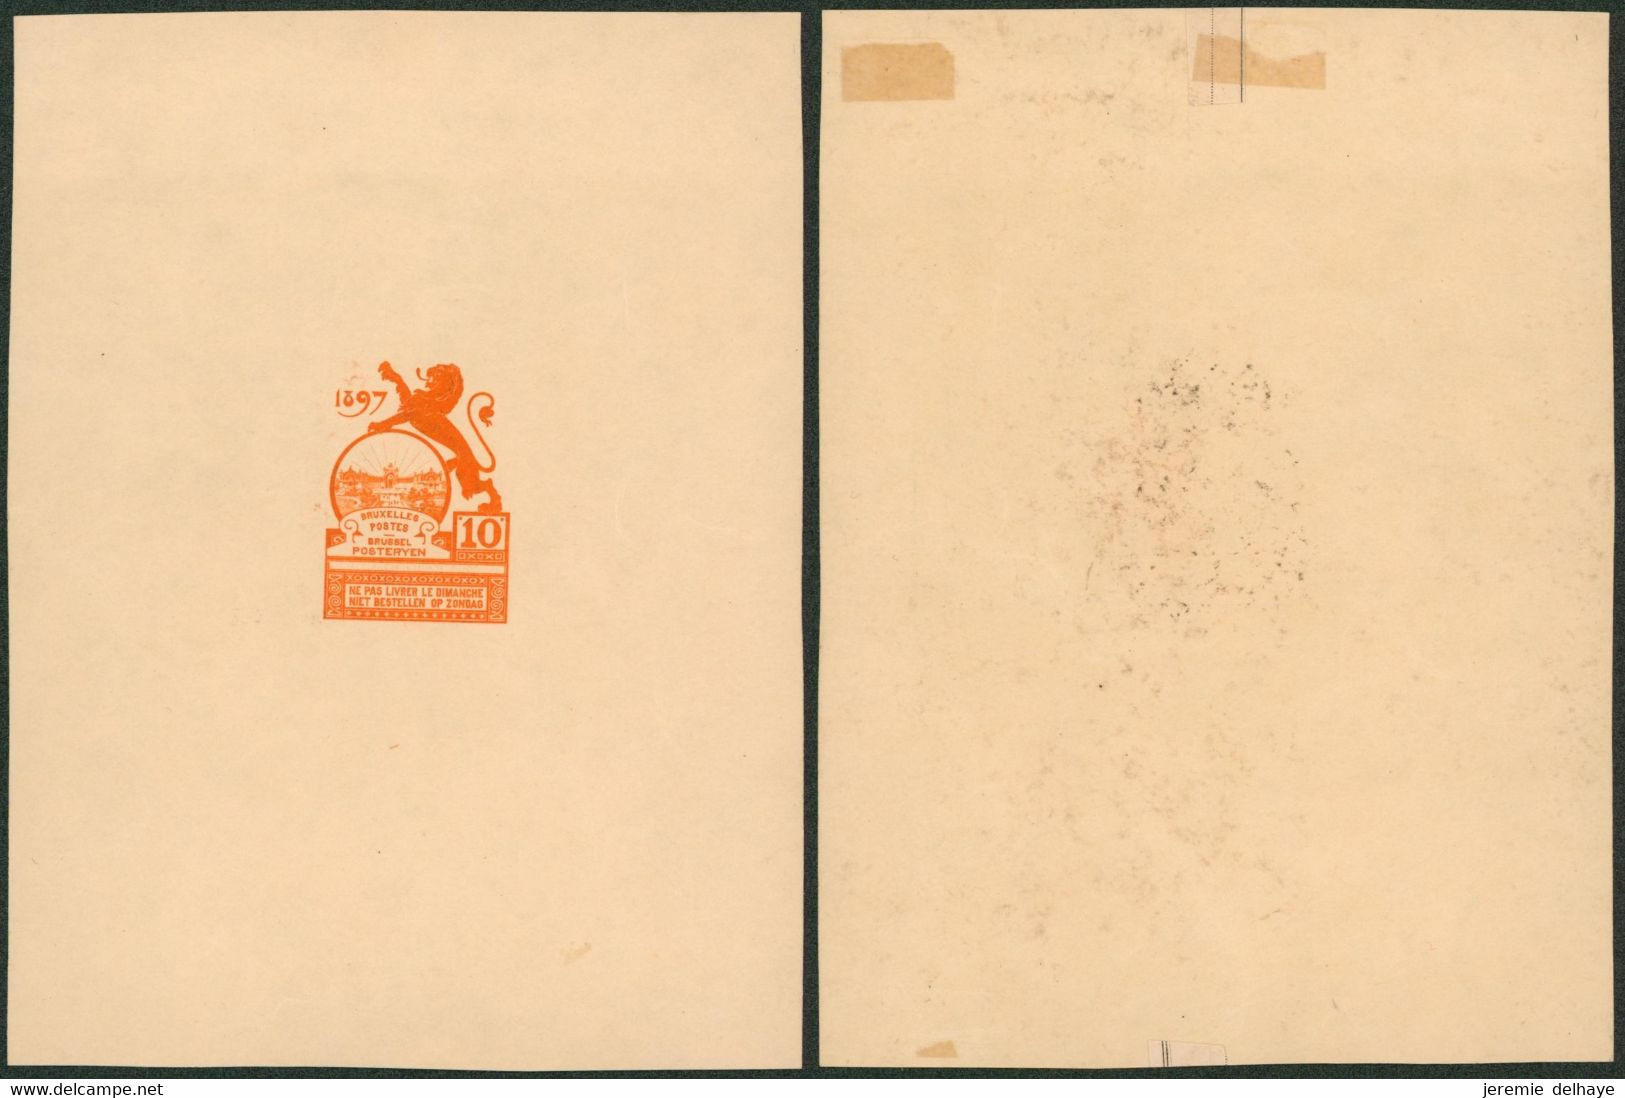 Essai - Proposition Du Peintre Louis Titz (Bruxelles Expositions 1897) Sur Papier Carton Crème (1 Couleur) : STES 2220 - Proeven & Herdruk